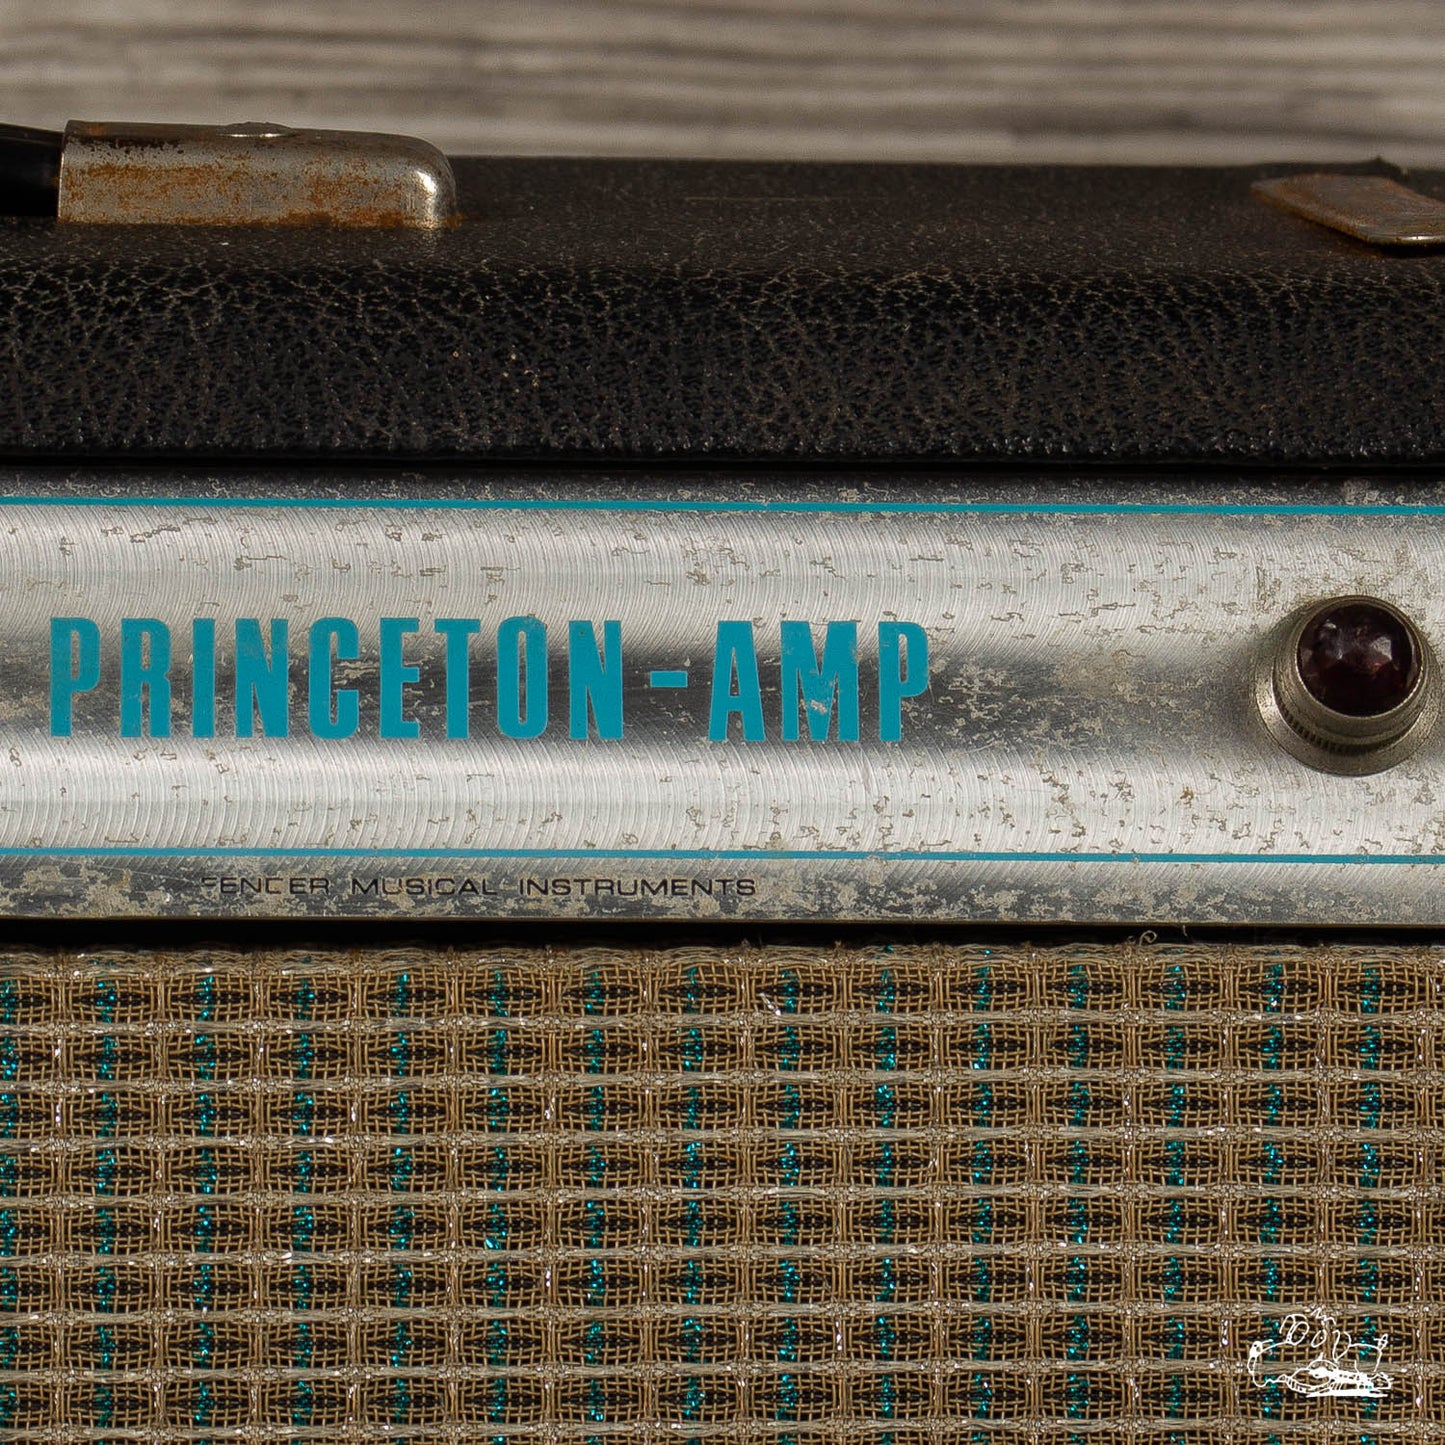 1969 Fender Princeton (Silverface)